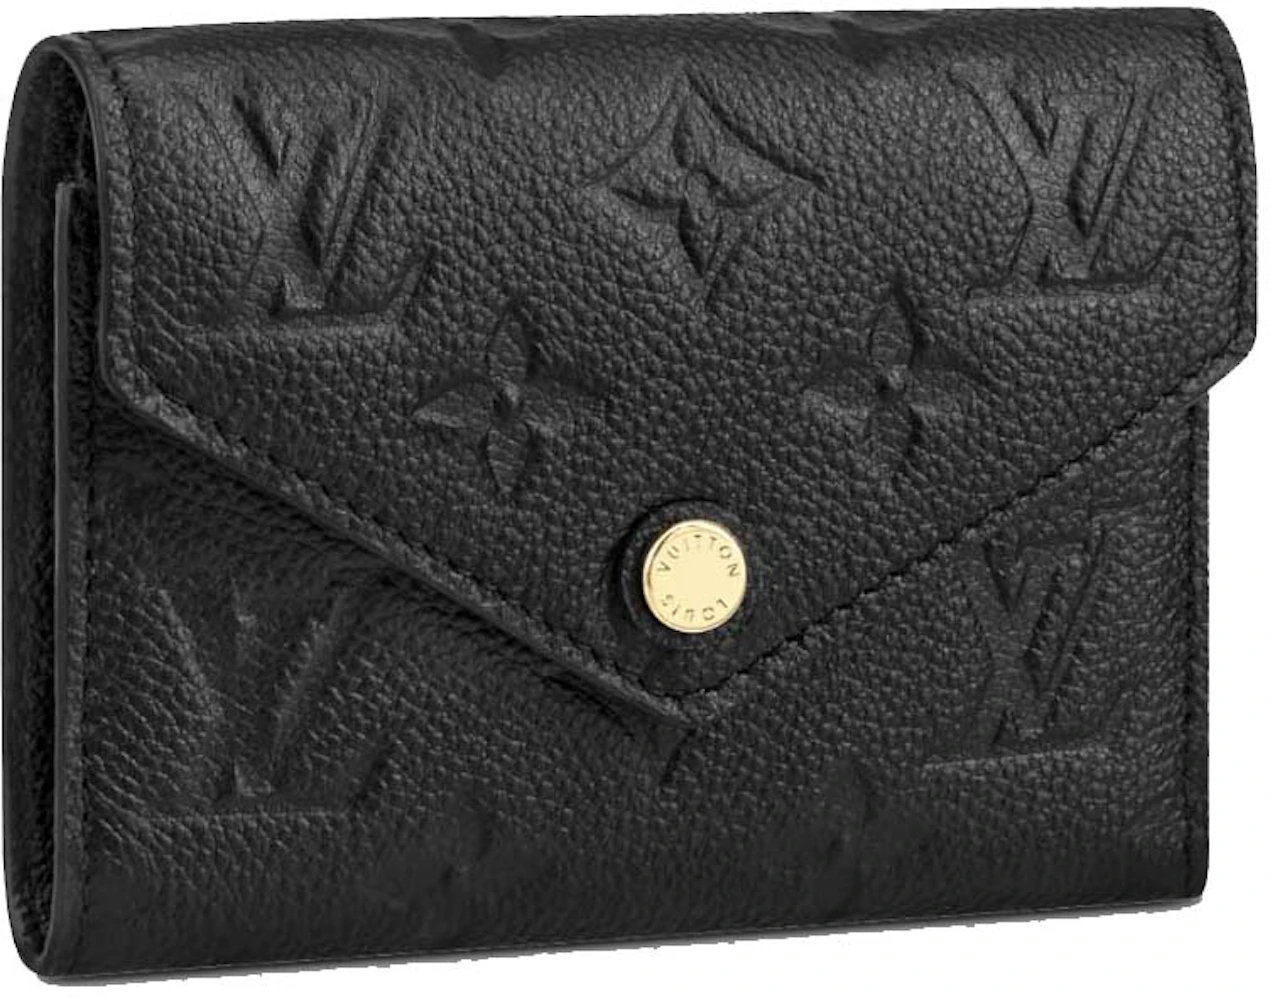 Louis Vuitton Victorine Wallet In Black Empreinte